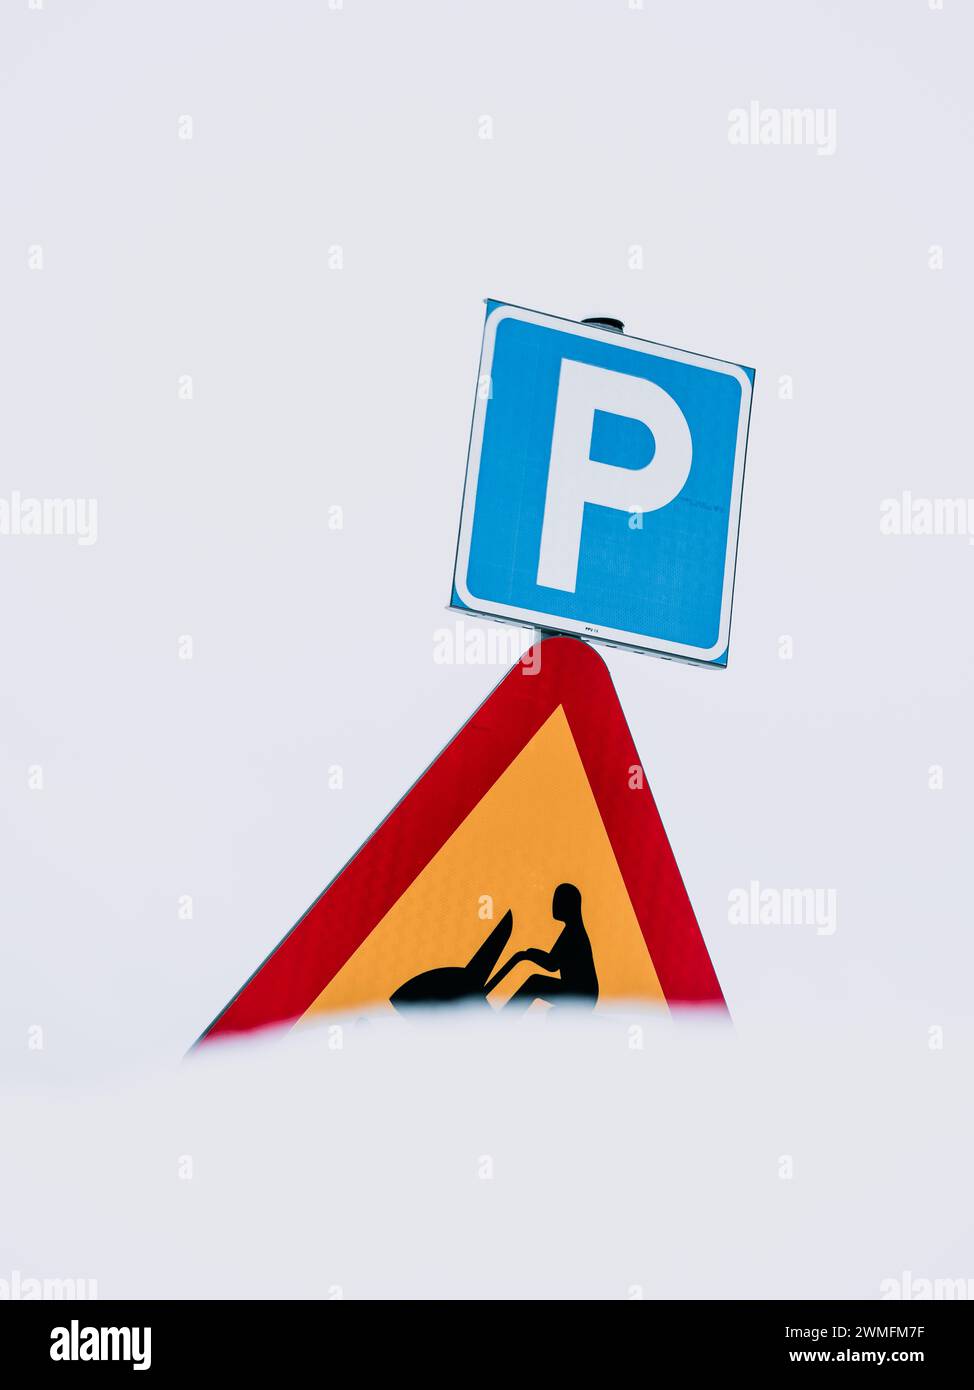 Un panneau de signalisation suédois est affiché bien en évidence, indiquant une zone de stationnement, associé à un triangle d'avertissement signalant un éventuel crossi de motoneige Banque D'Images